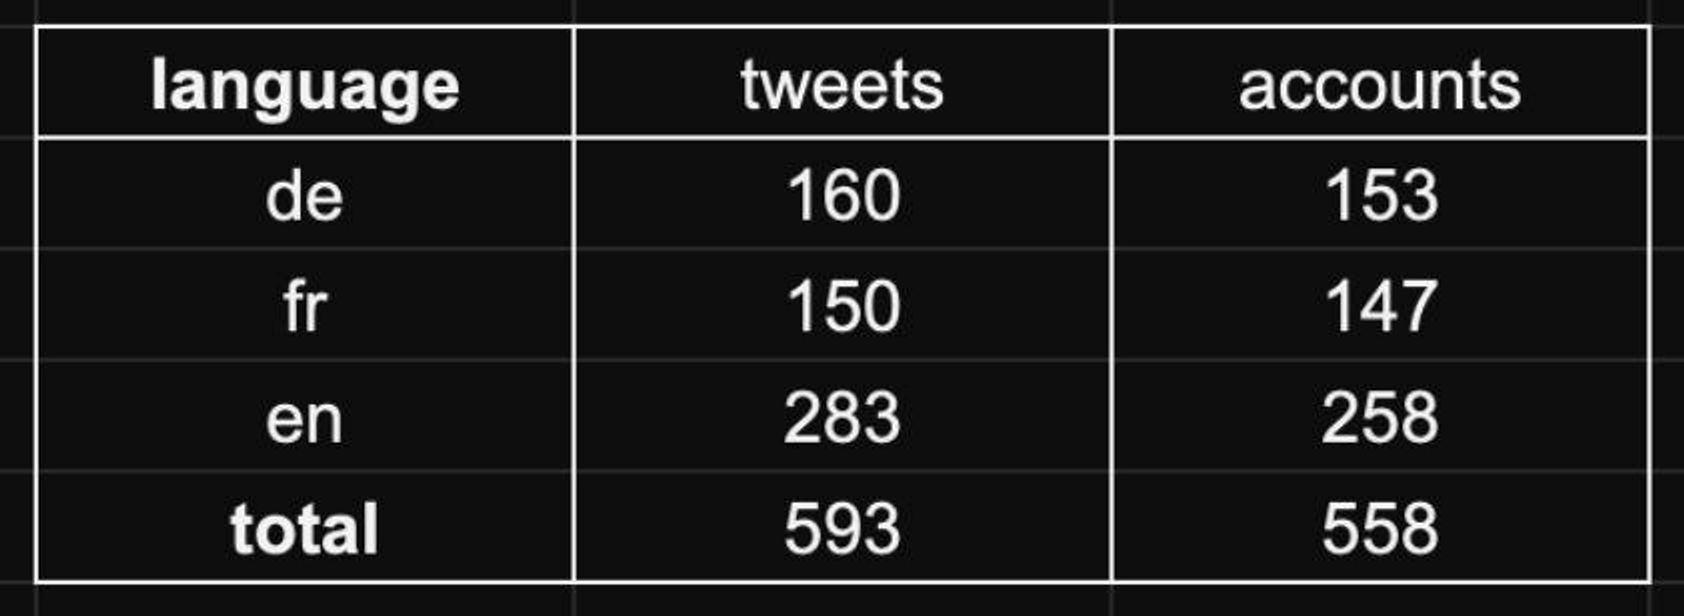 Количество аккаунтов и твитов с публикацией видеоролика, сортировка по языкам. Цифры предоставлены проектом «Блокировщик ботов»